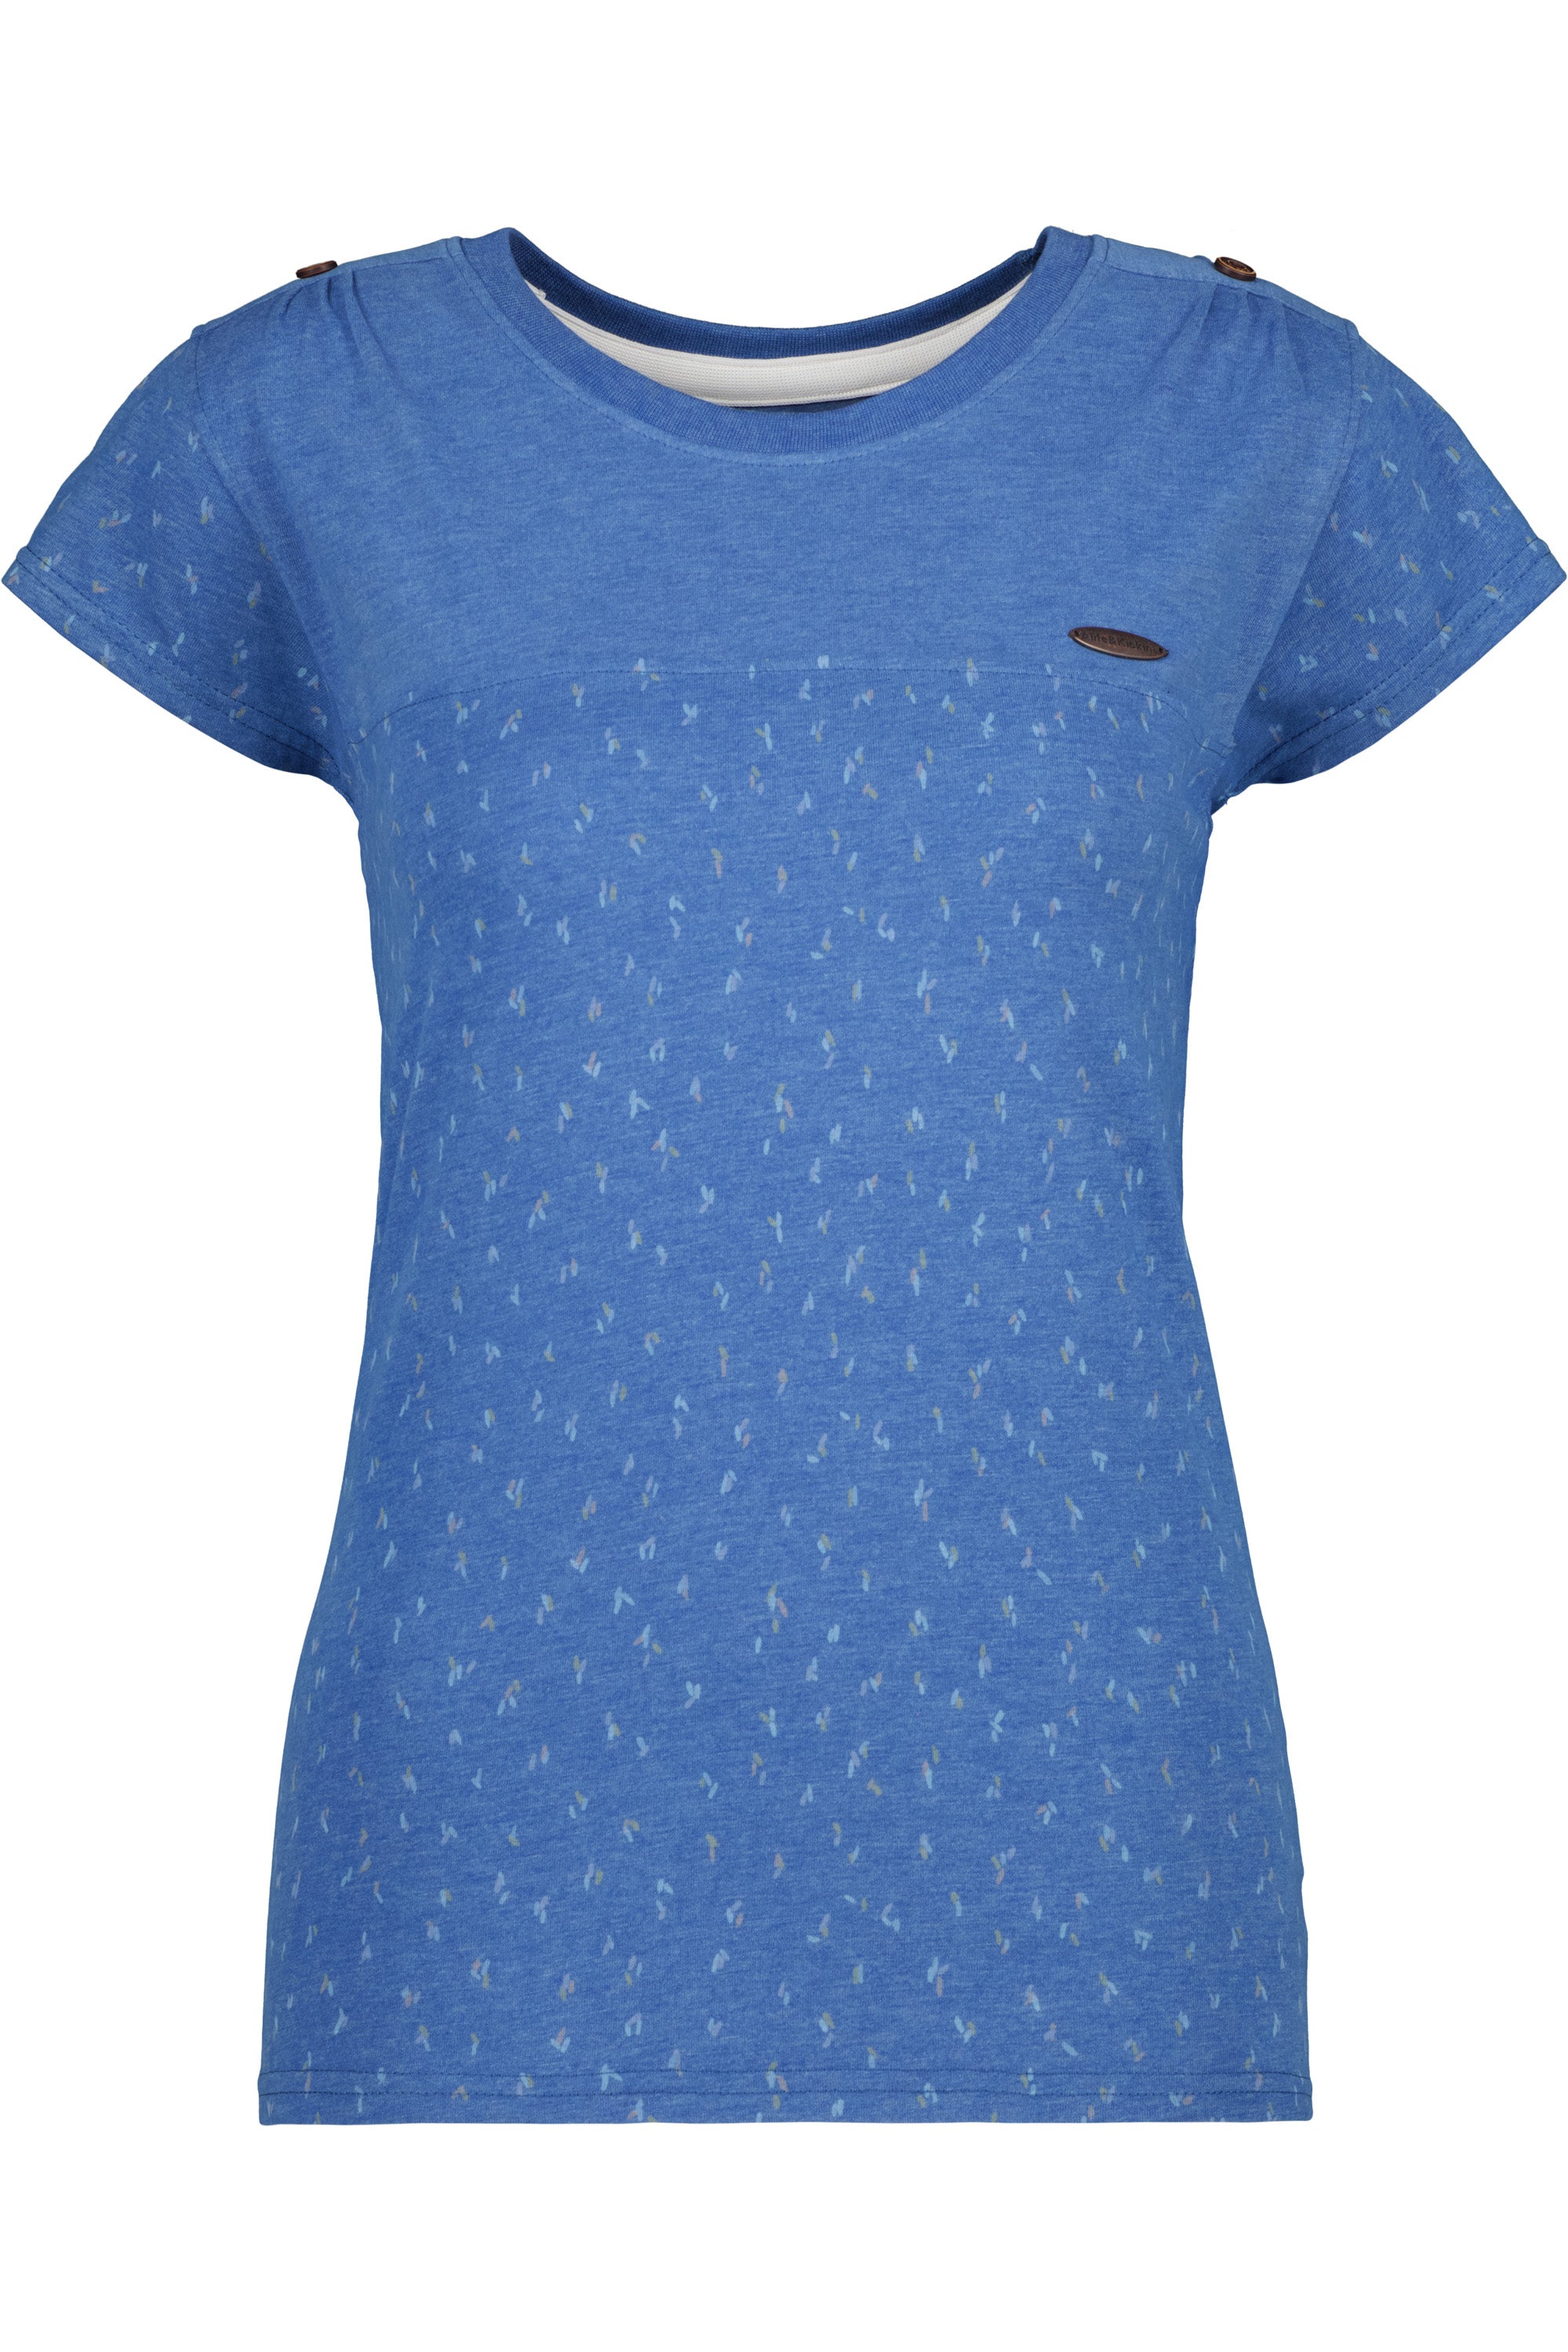 Sommer-Shirt für Damen LioAK B Blau